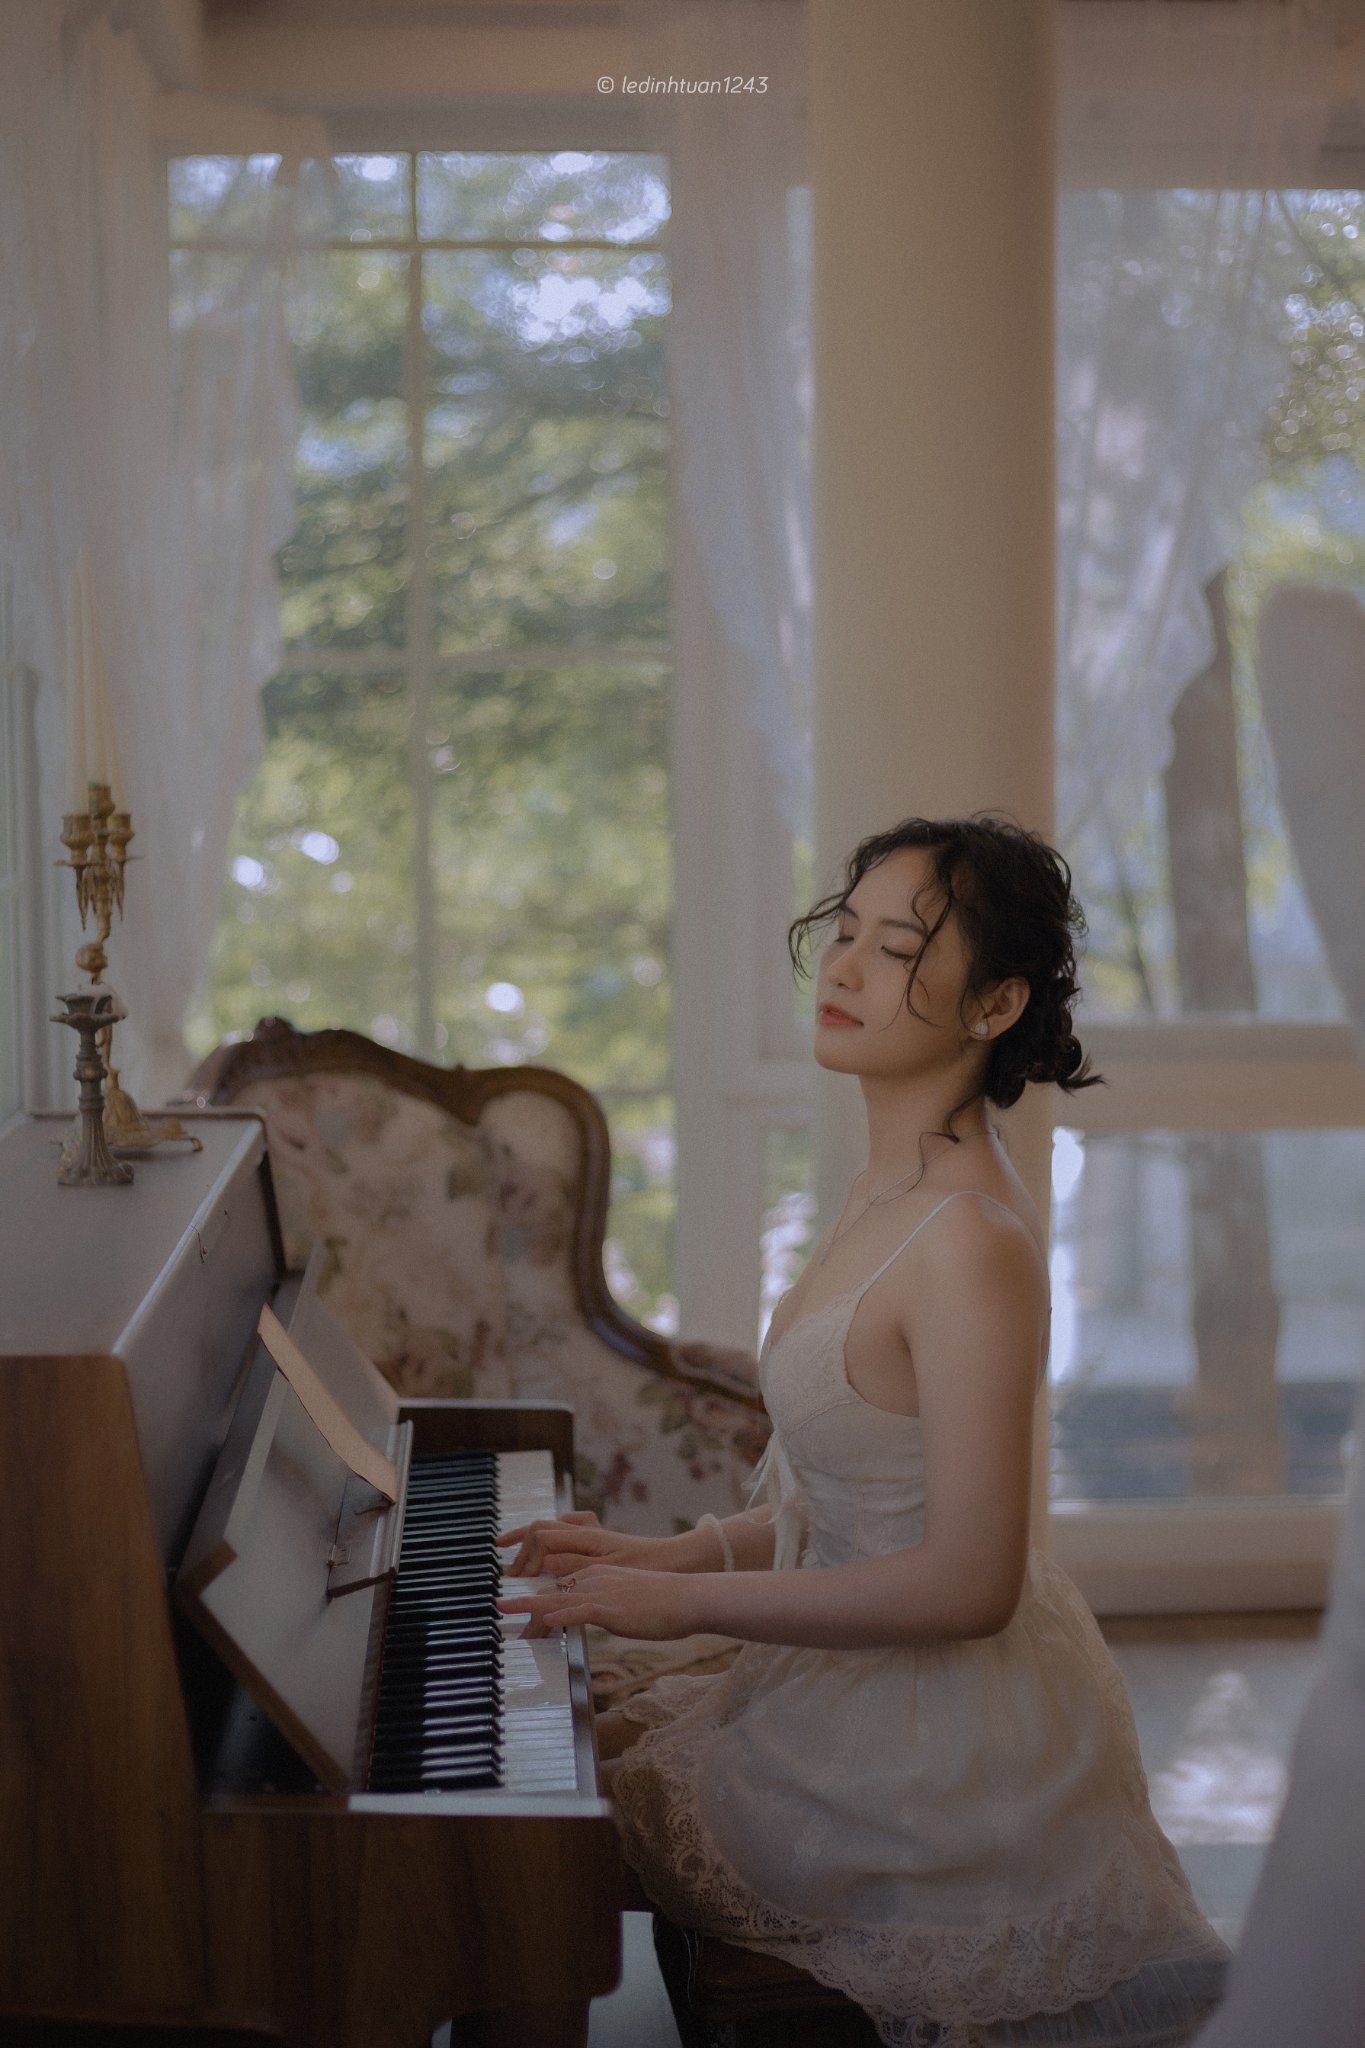 LDTPhotos | Le Dinh Tuan - @ledinhtuan Sexy-Piano-1 Trang chủ  